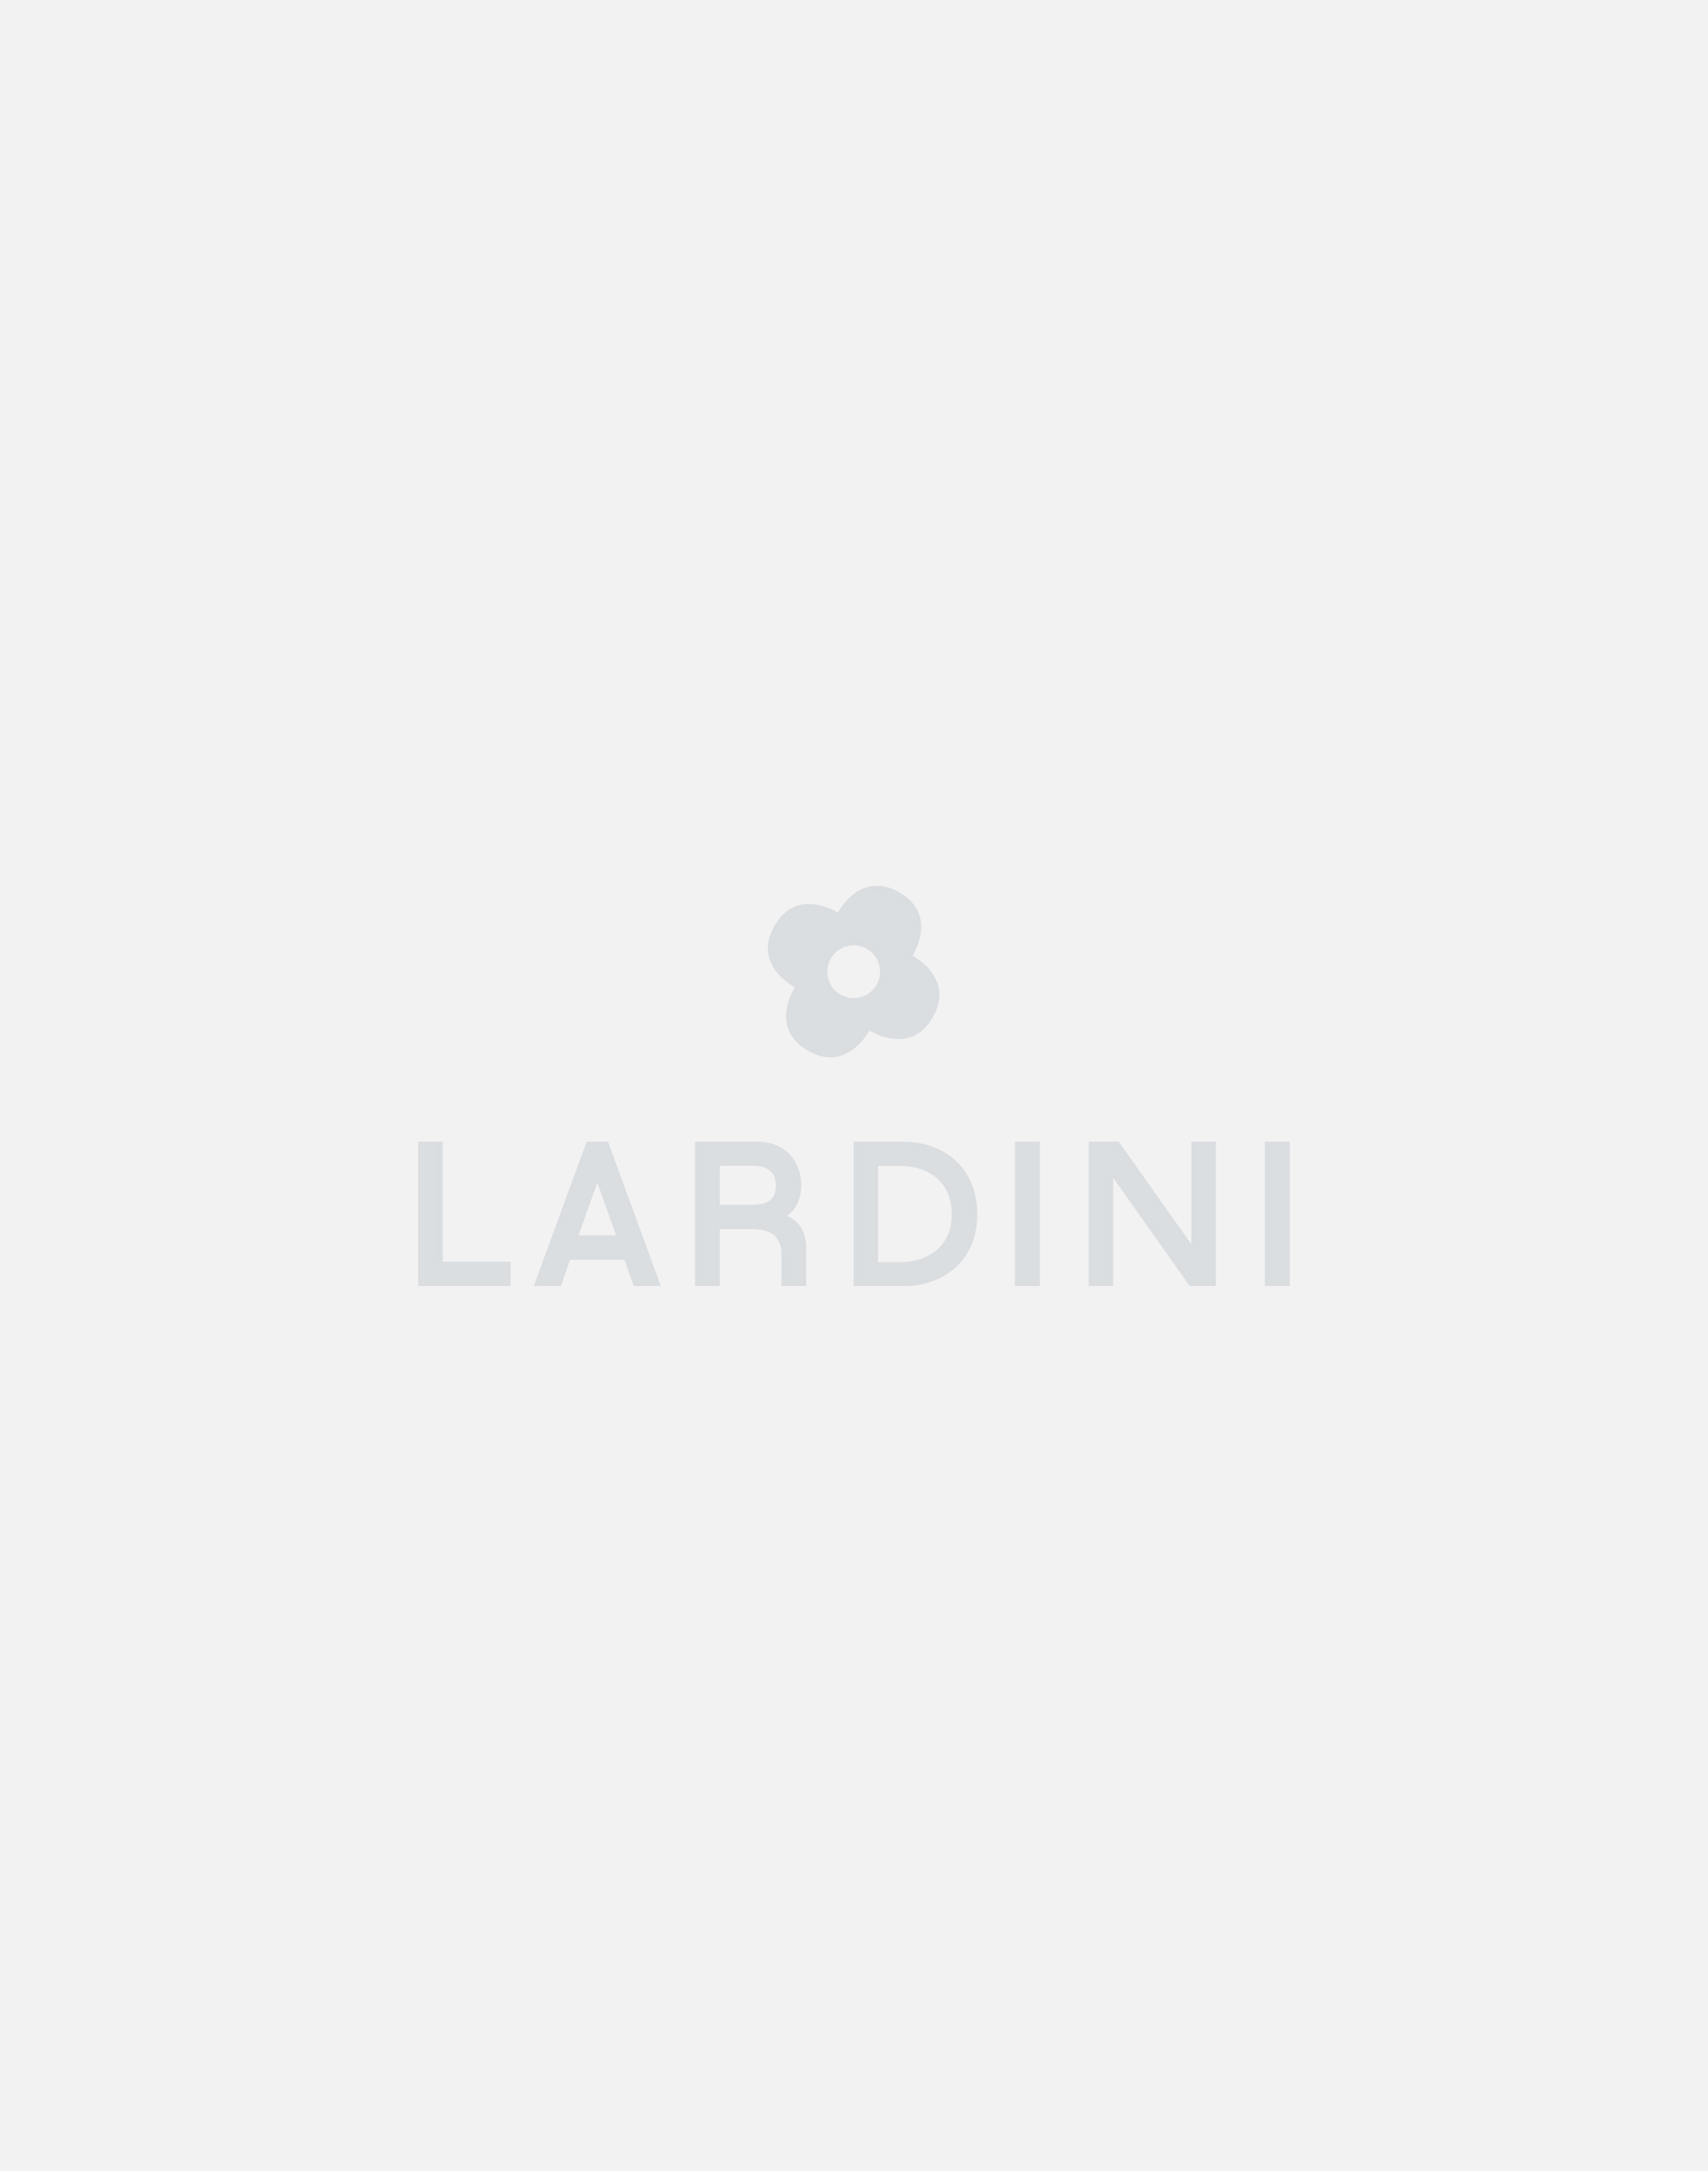 Cream trousers - Luigi Lardini capsule 4